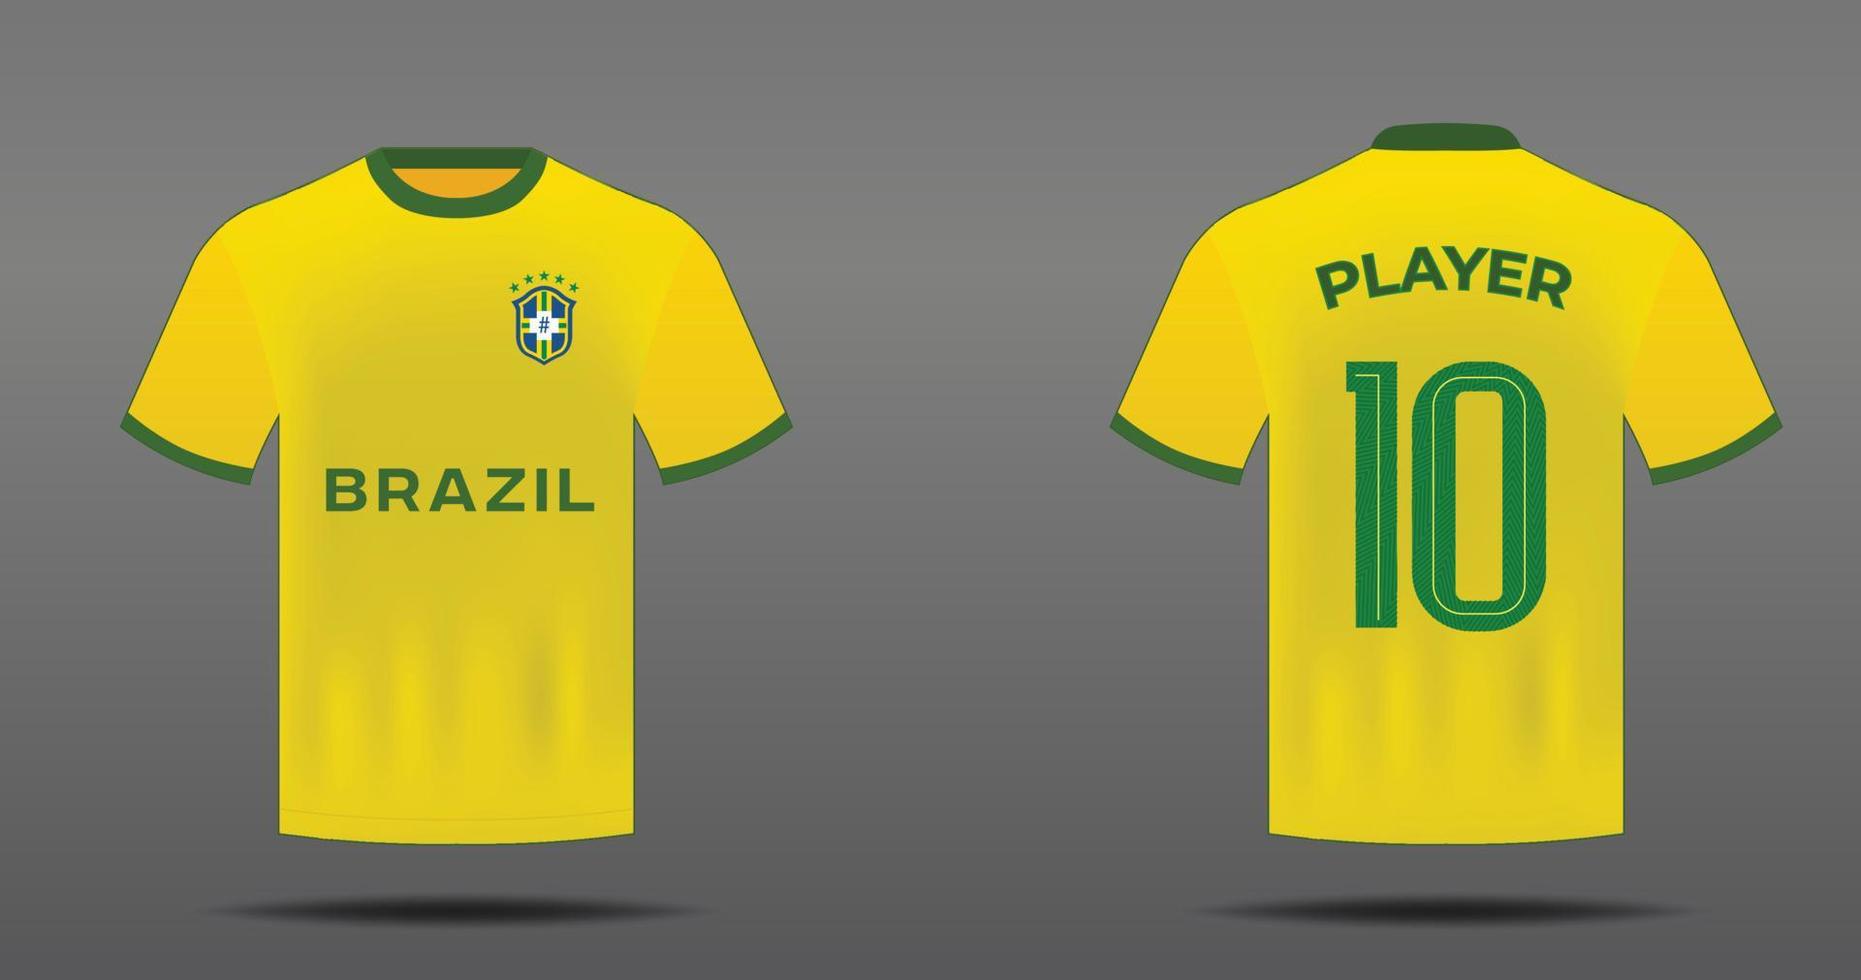 voetbal Jersey voor Brazilië nationaal team met voorkant en terug visie vector